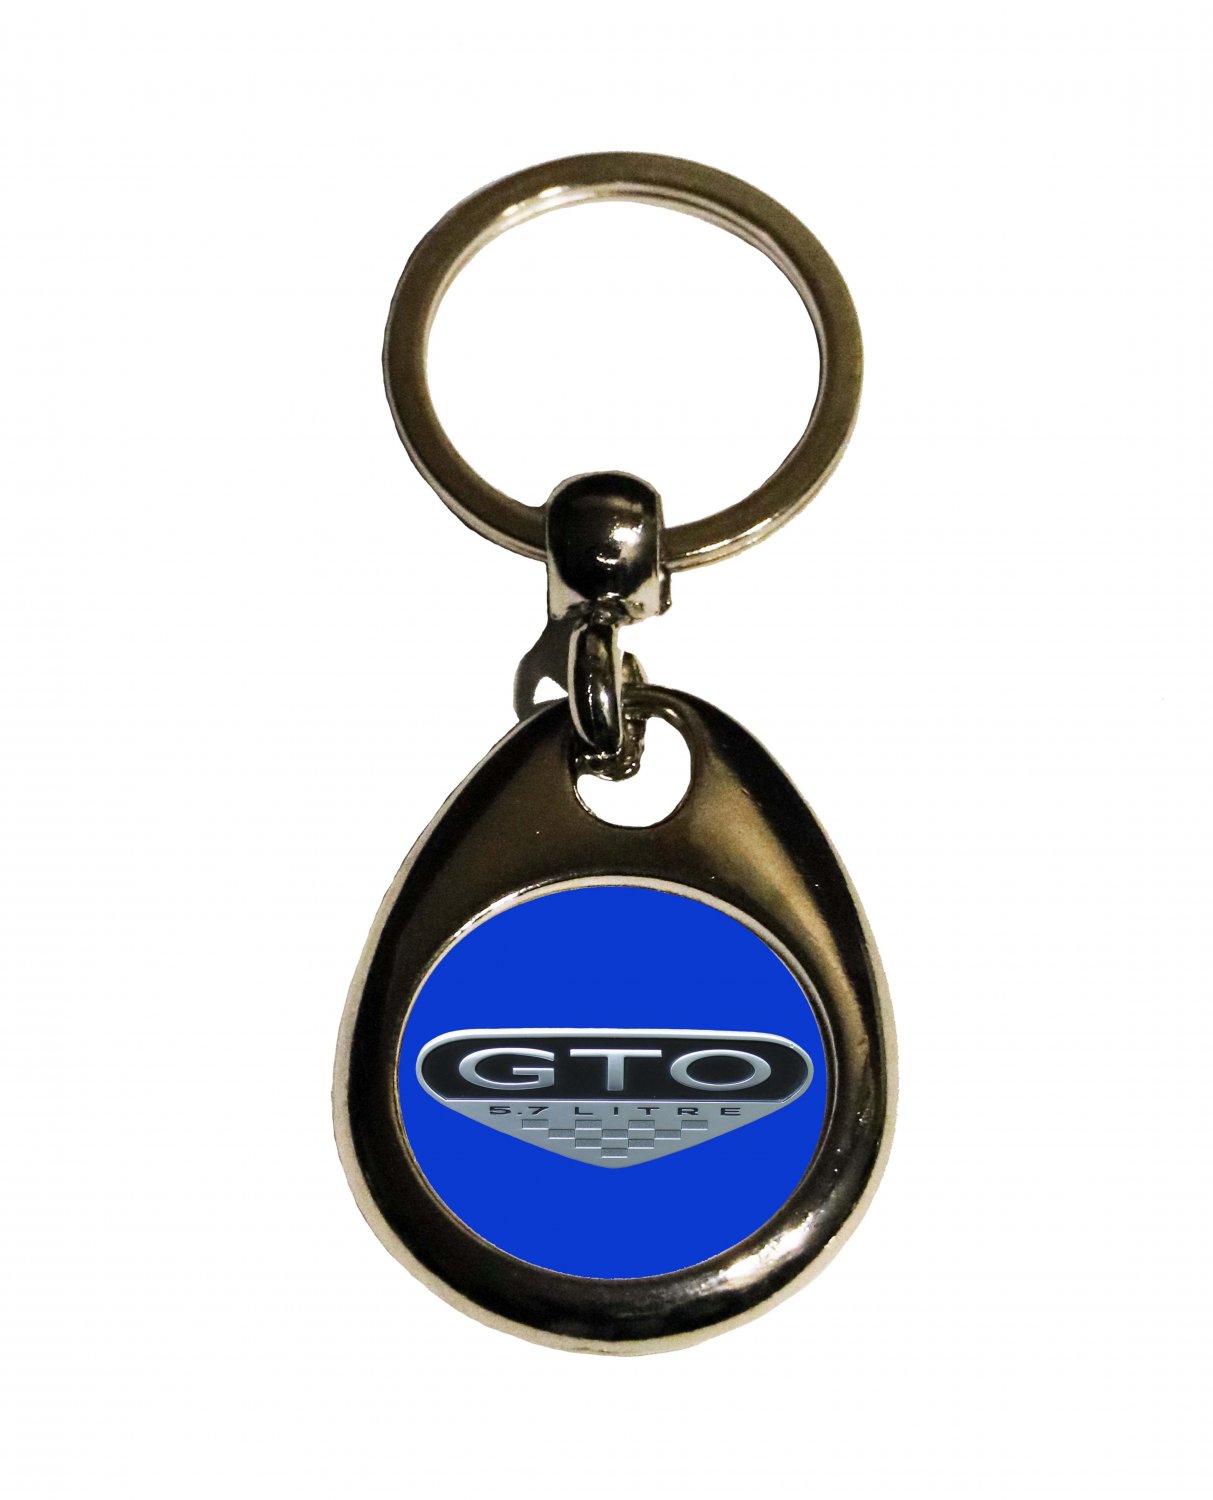 New Pontiac GTO logo keychain! FREE SHIPPING!